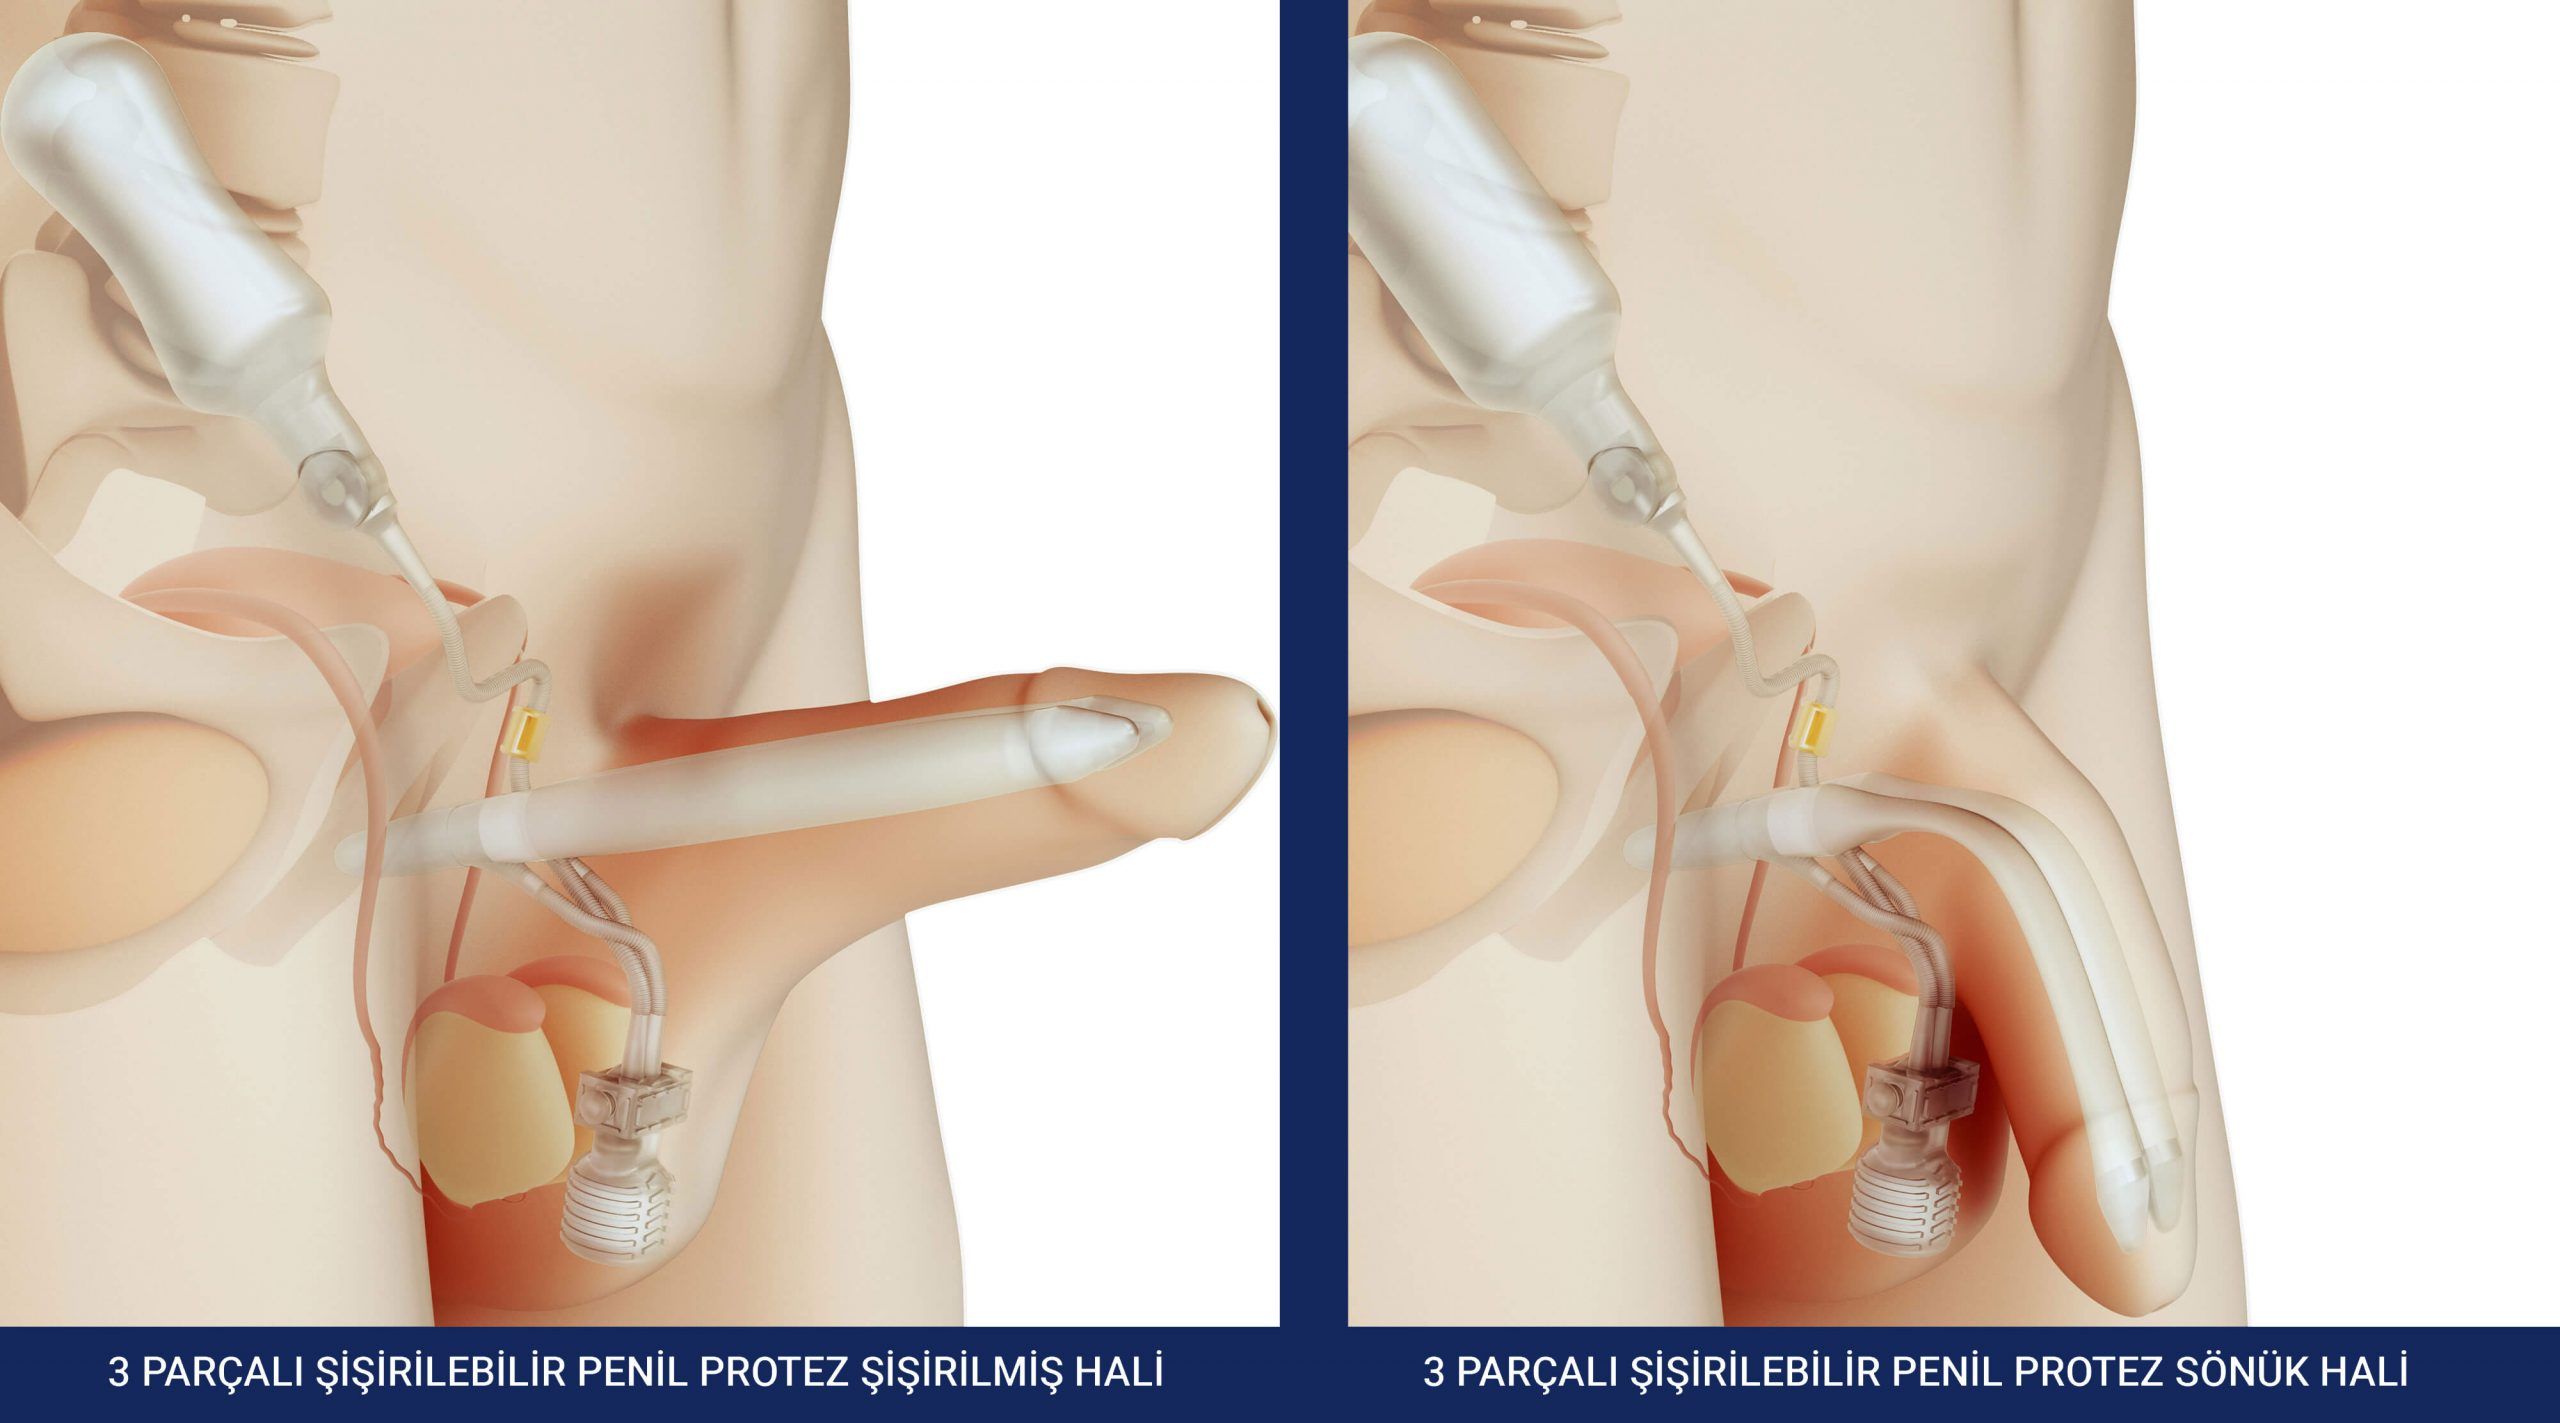 Üroloji Hastalıkları ve Penil Protez Tedavisinin Önemi: Bir Genel Bakış